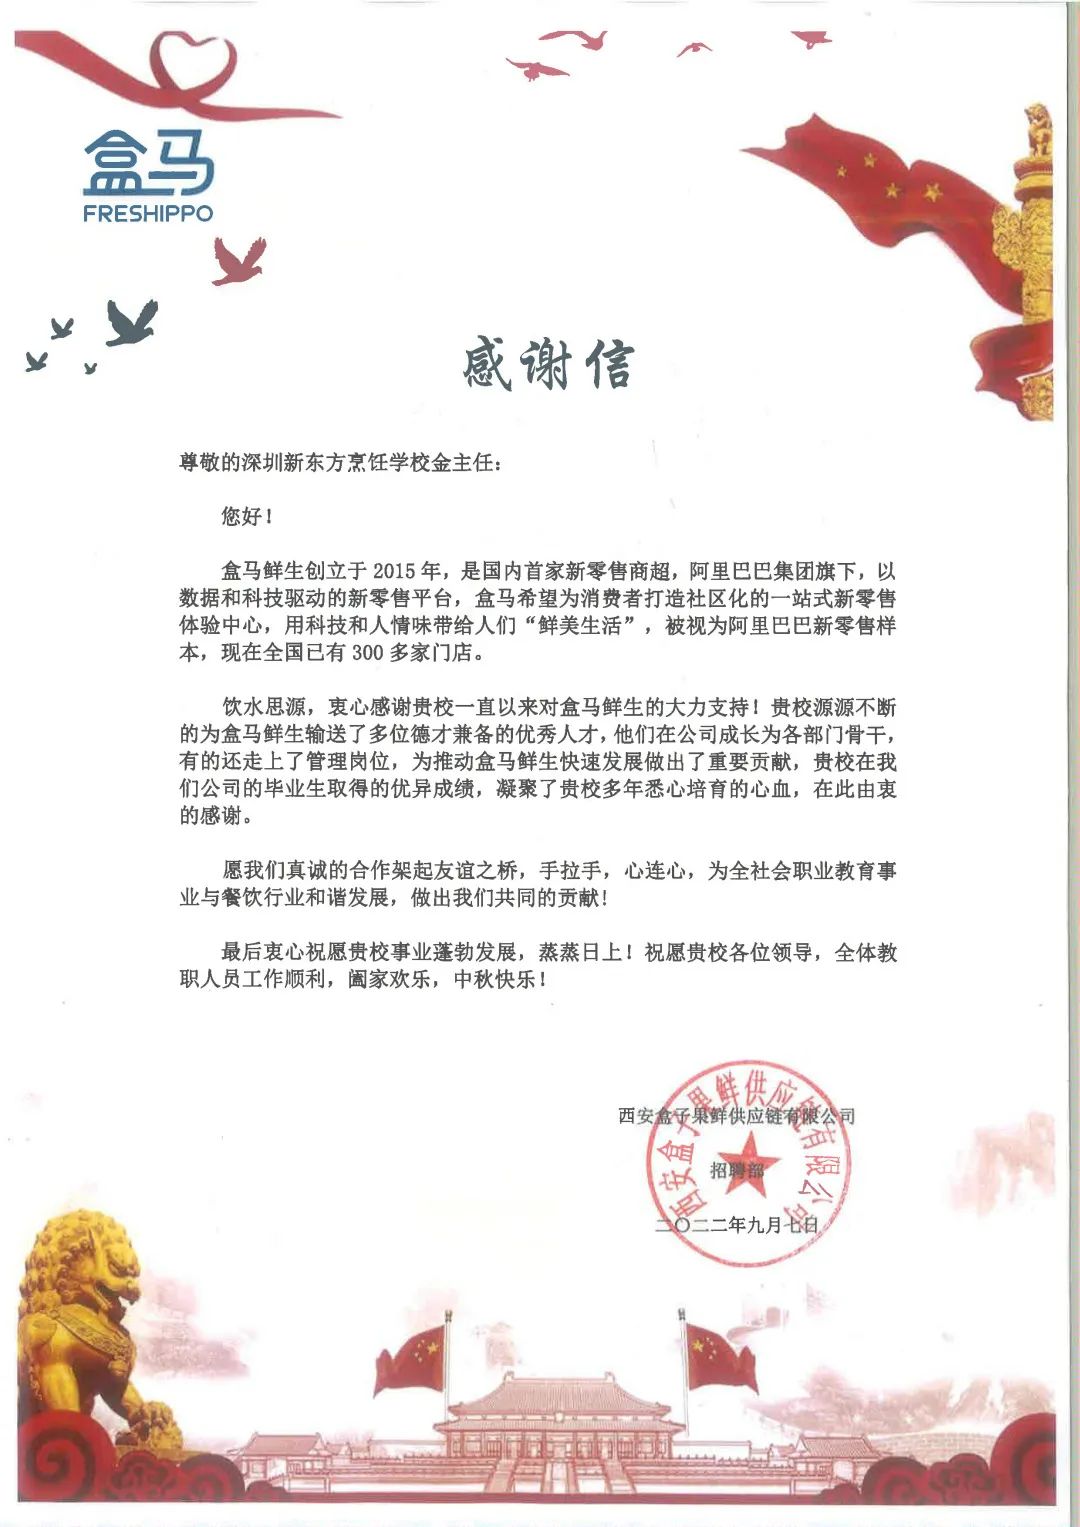 校企合作，感谢信任【盒马】致深圳新东方烹饪学校的感谢信